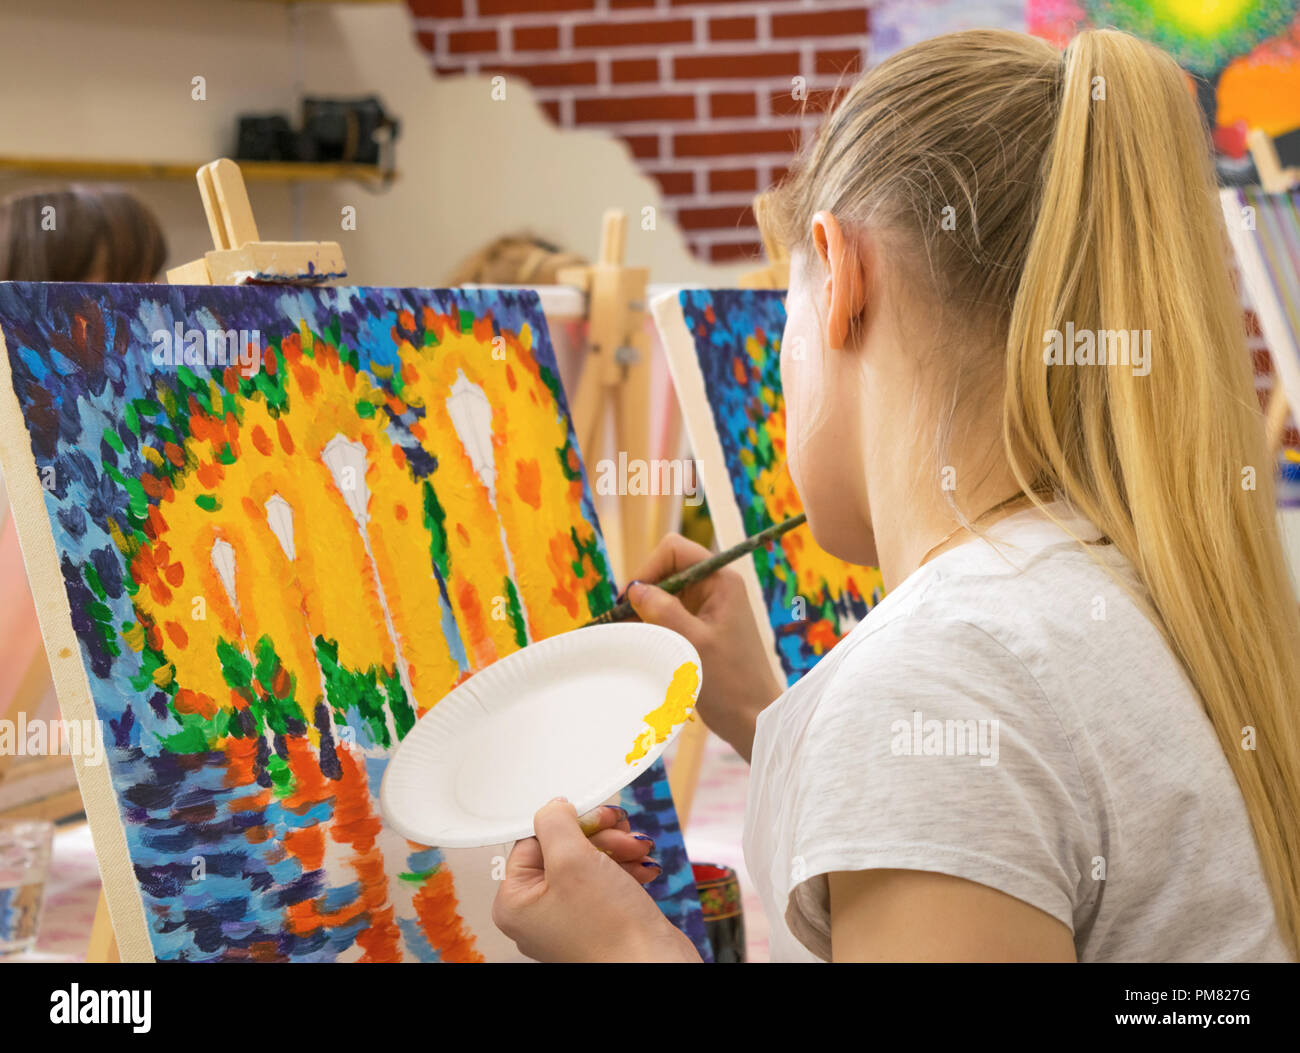 Jeune femme avec une longue chevelure blonde s'appuyant sur une toile au cours de maître dans l'art studio Banque D'Images